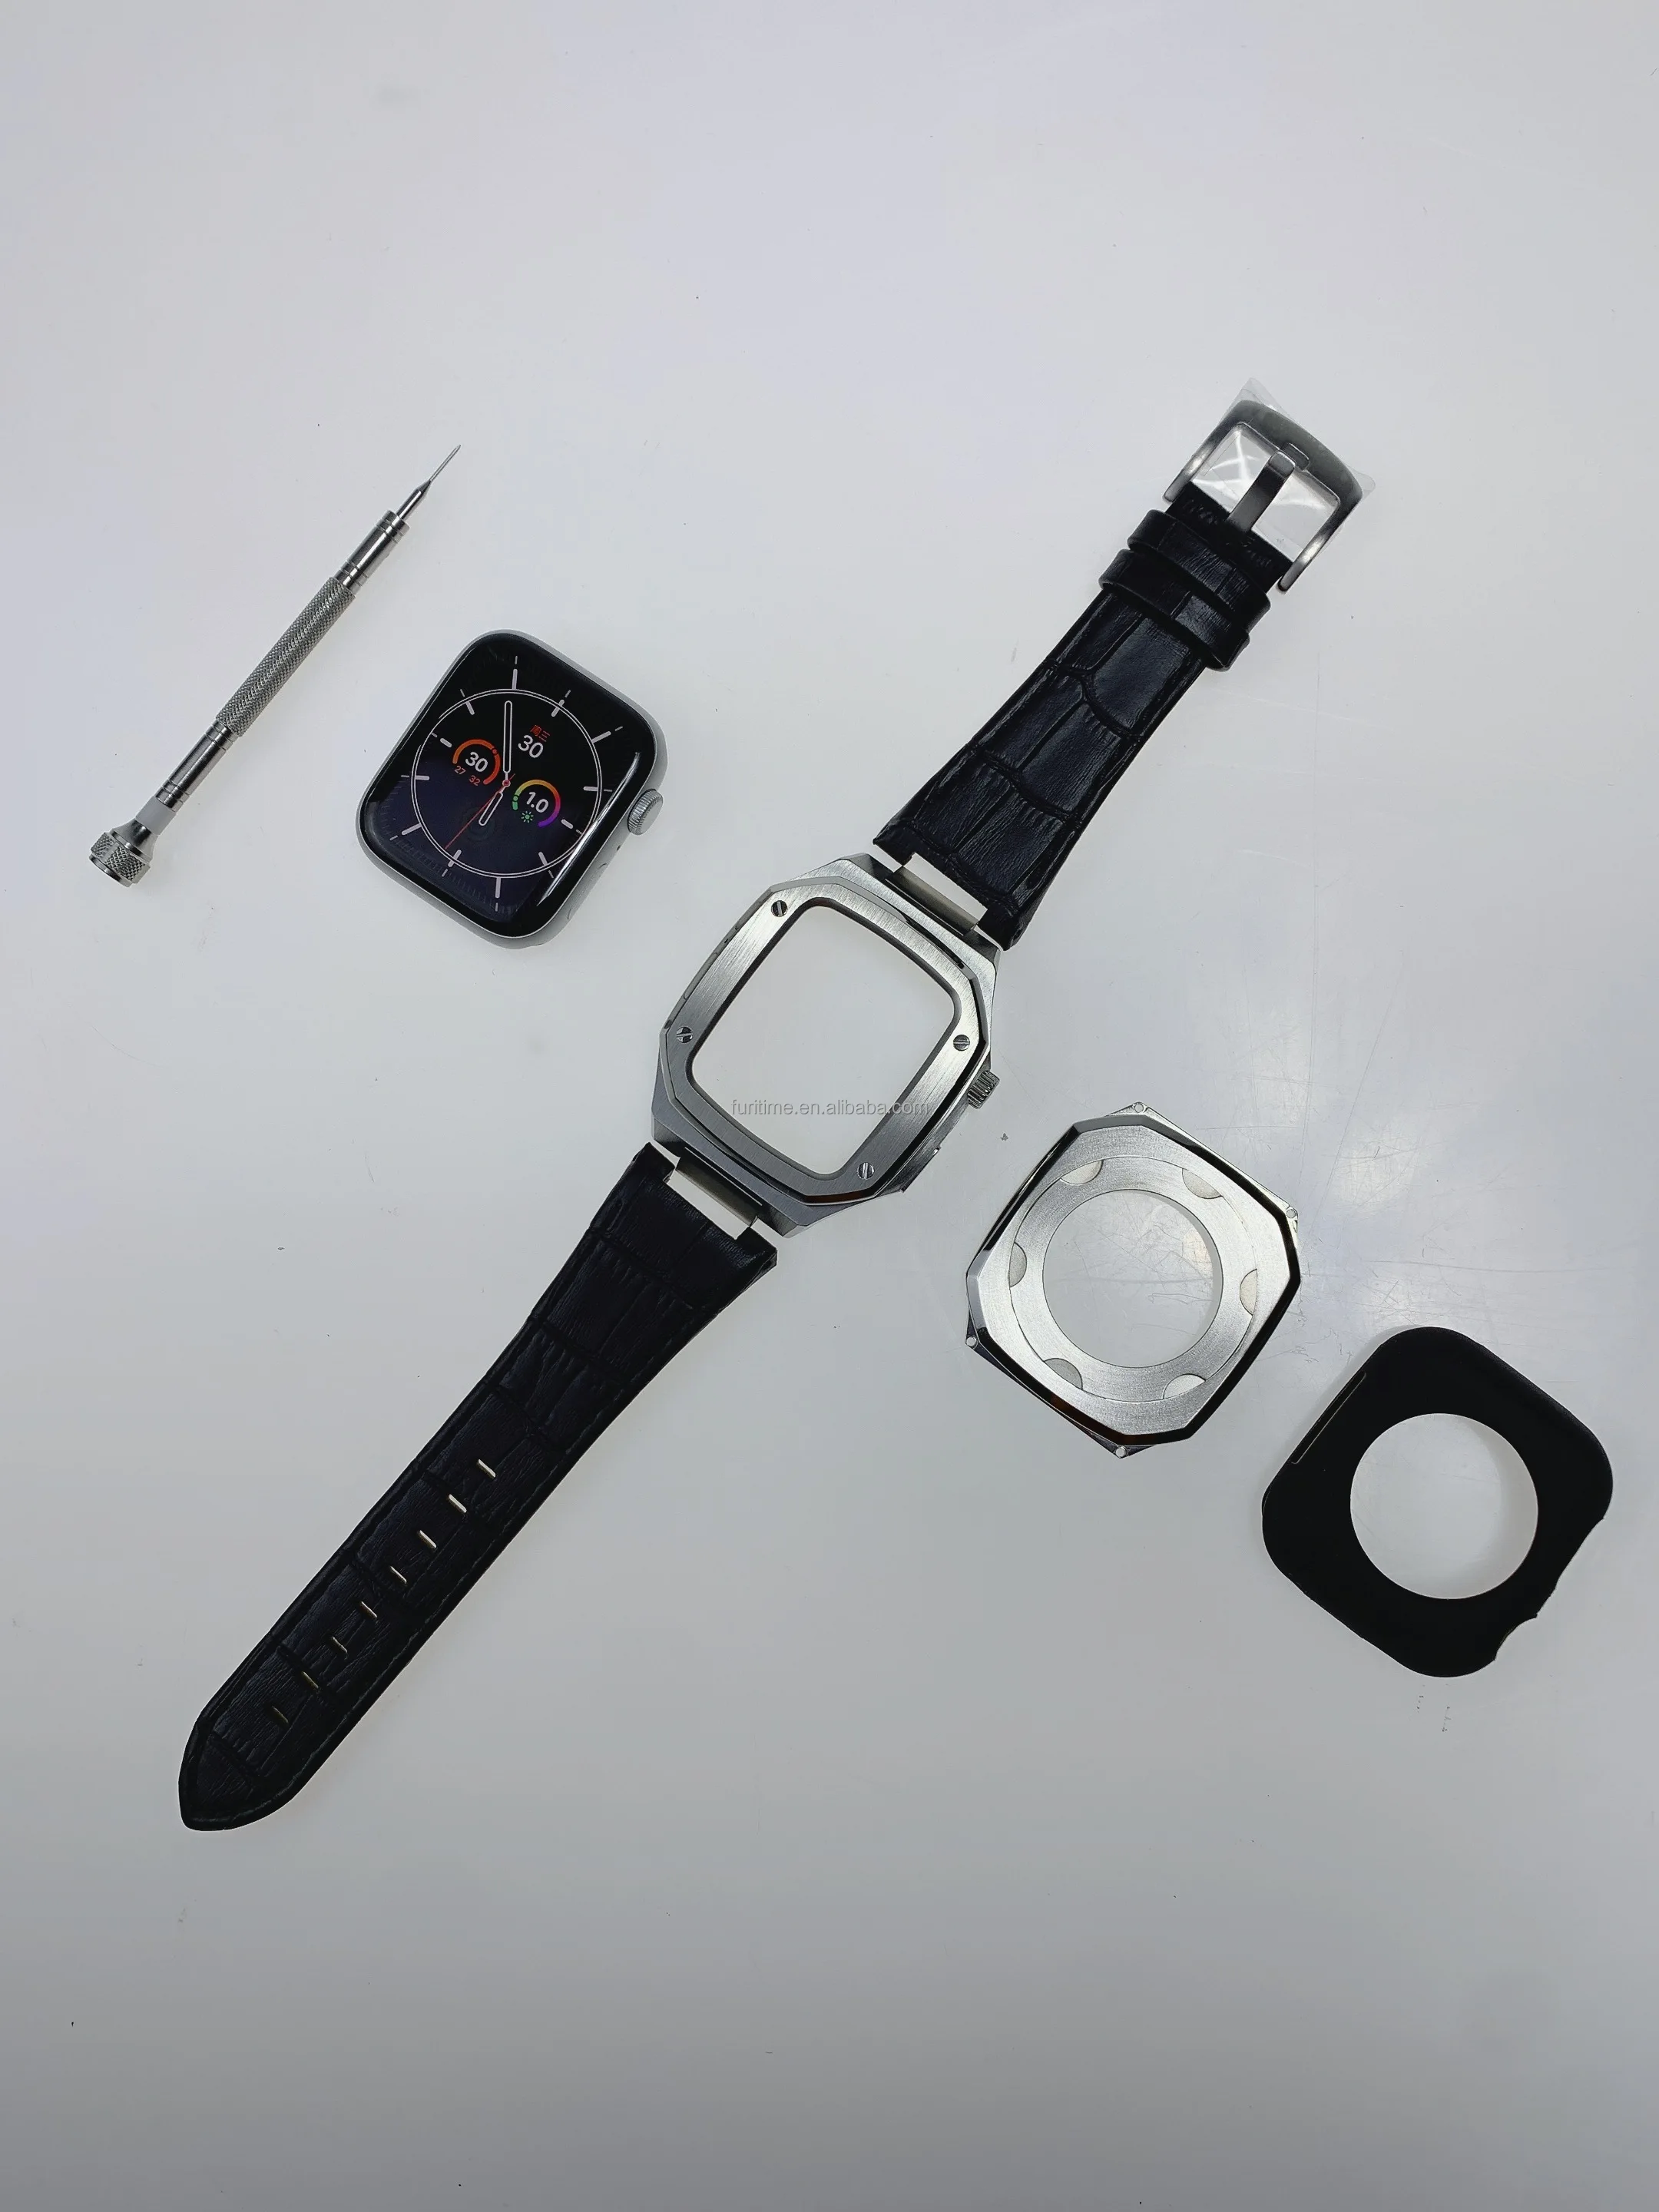 Apple watch case (1).jpg